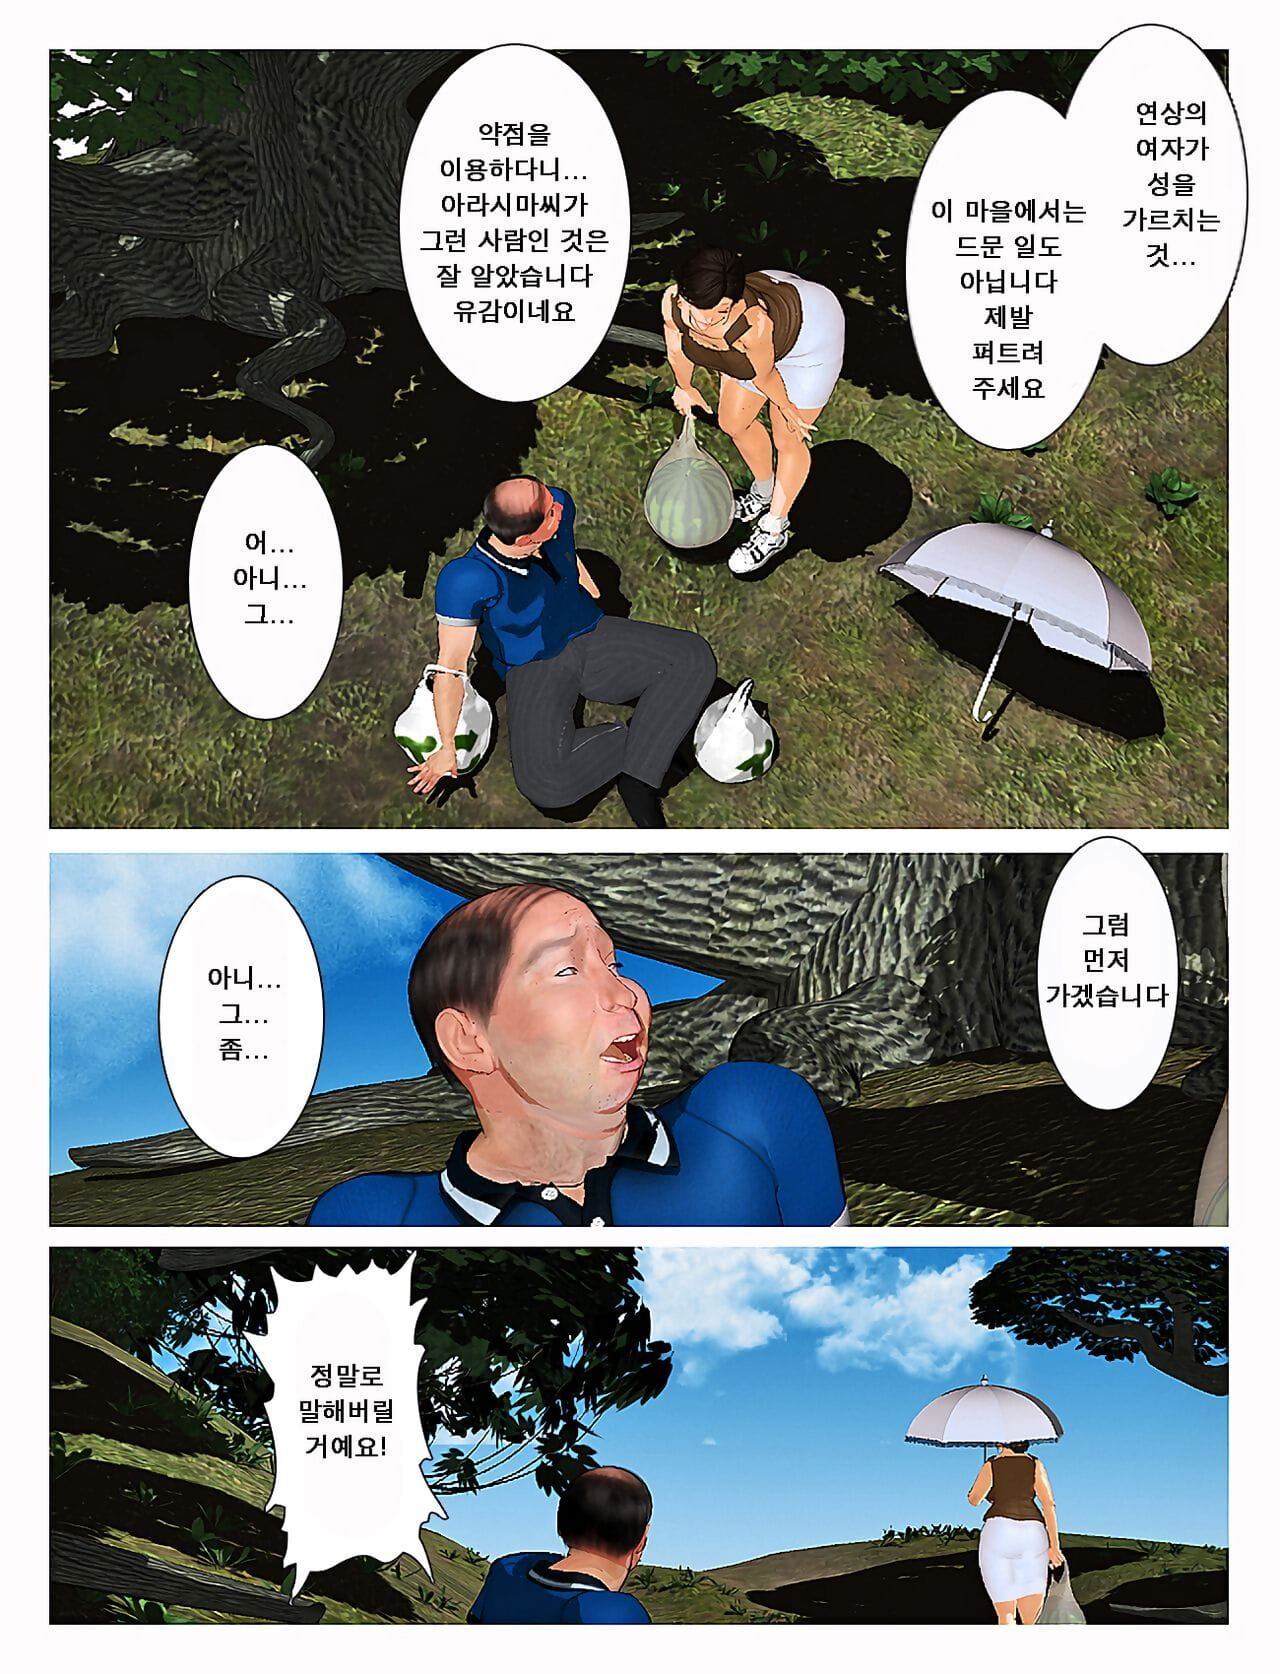 Kyou no Misako-san 2019:2 - 오늘의 미사코씨 2019:2 page 1